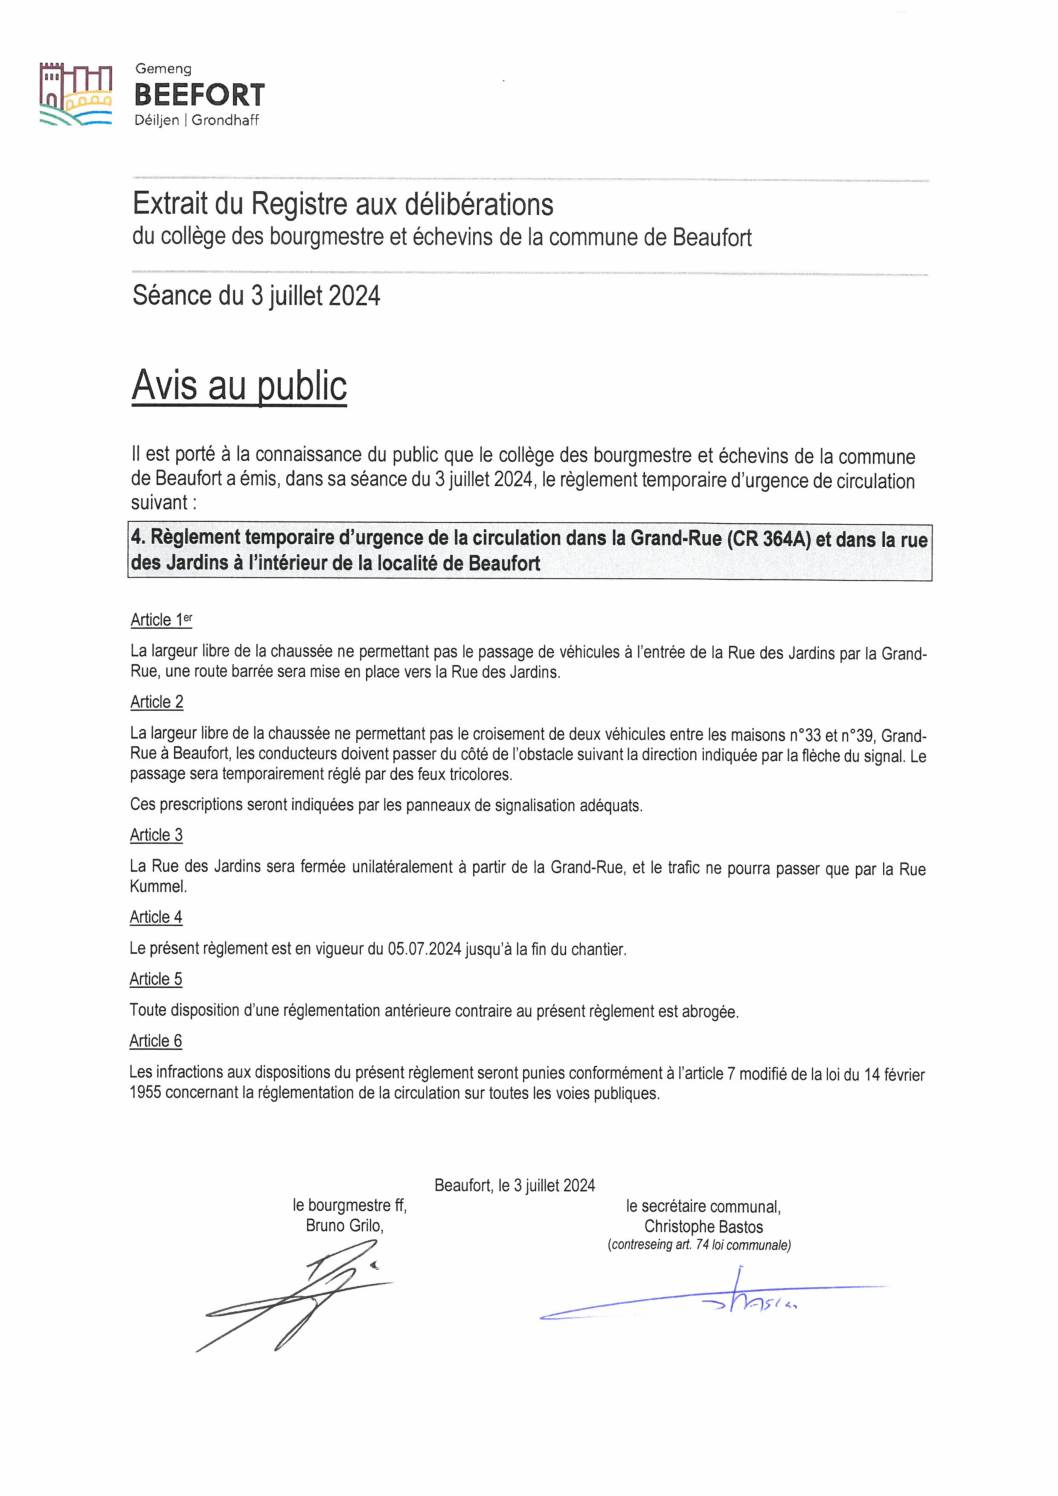 05.07.2024: Règlement temporaire d’urgence de la circulation Grand-Rue / rue des Jardins